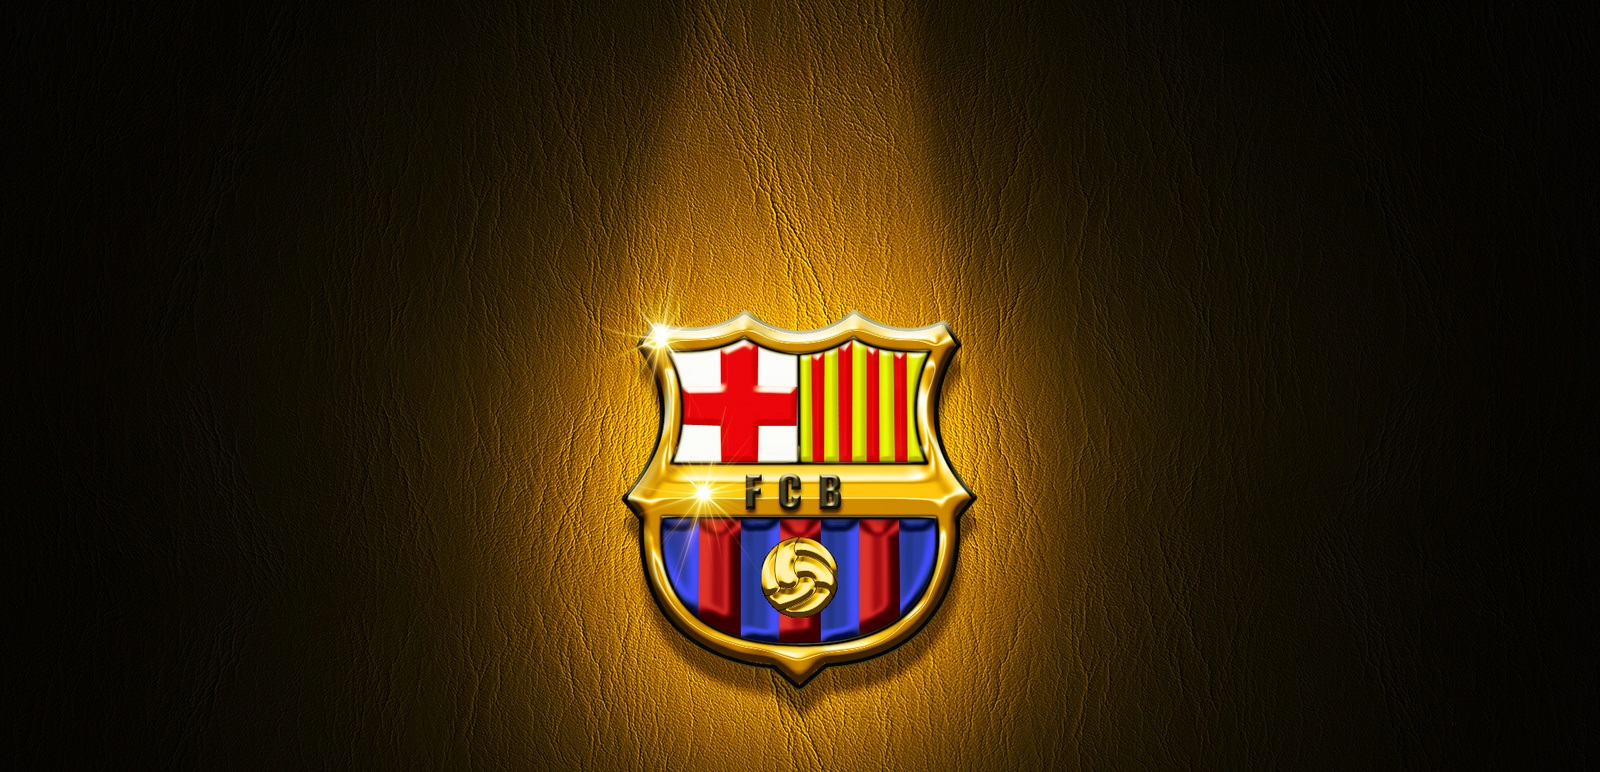 FC Barcelona Logo Wallpaper  FC Barcelona Wallpaper 22614322  Fanpop